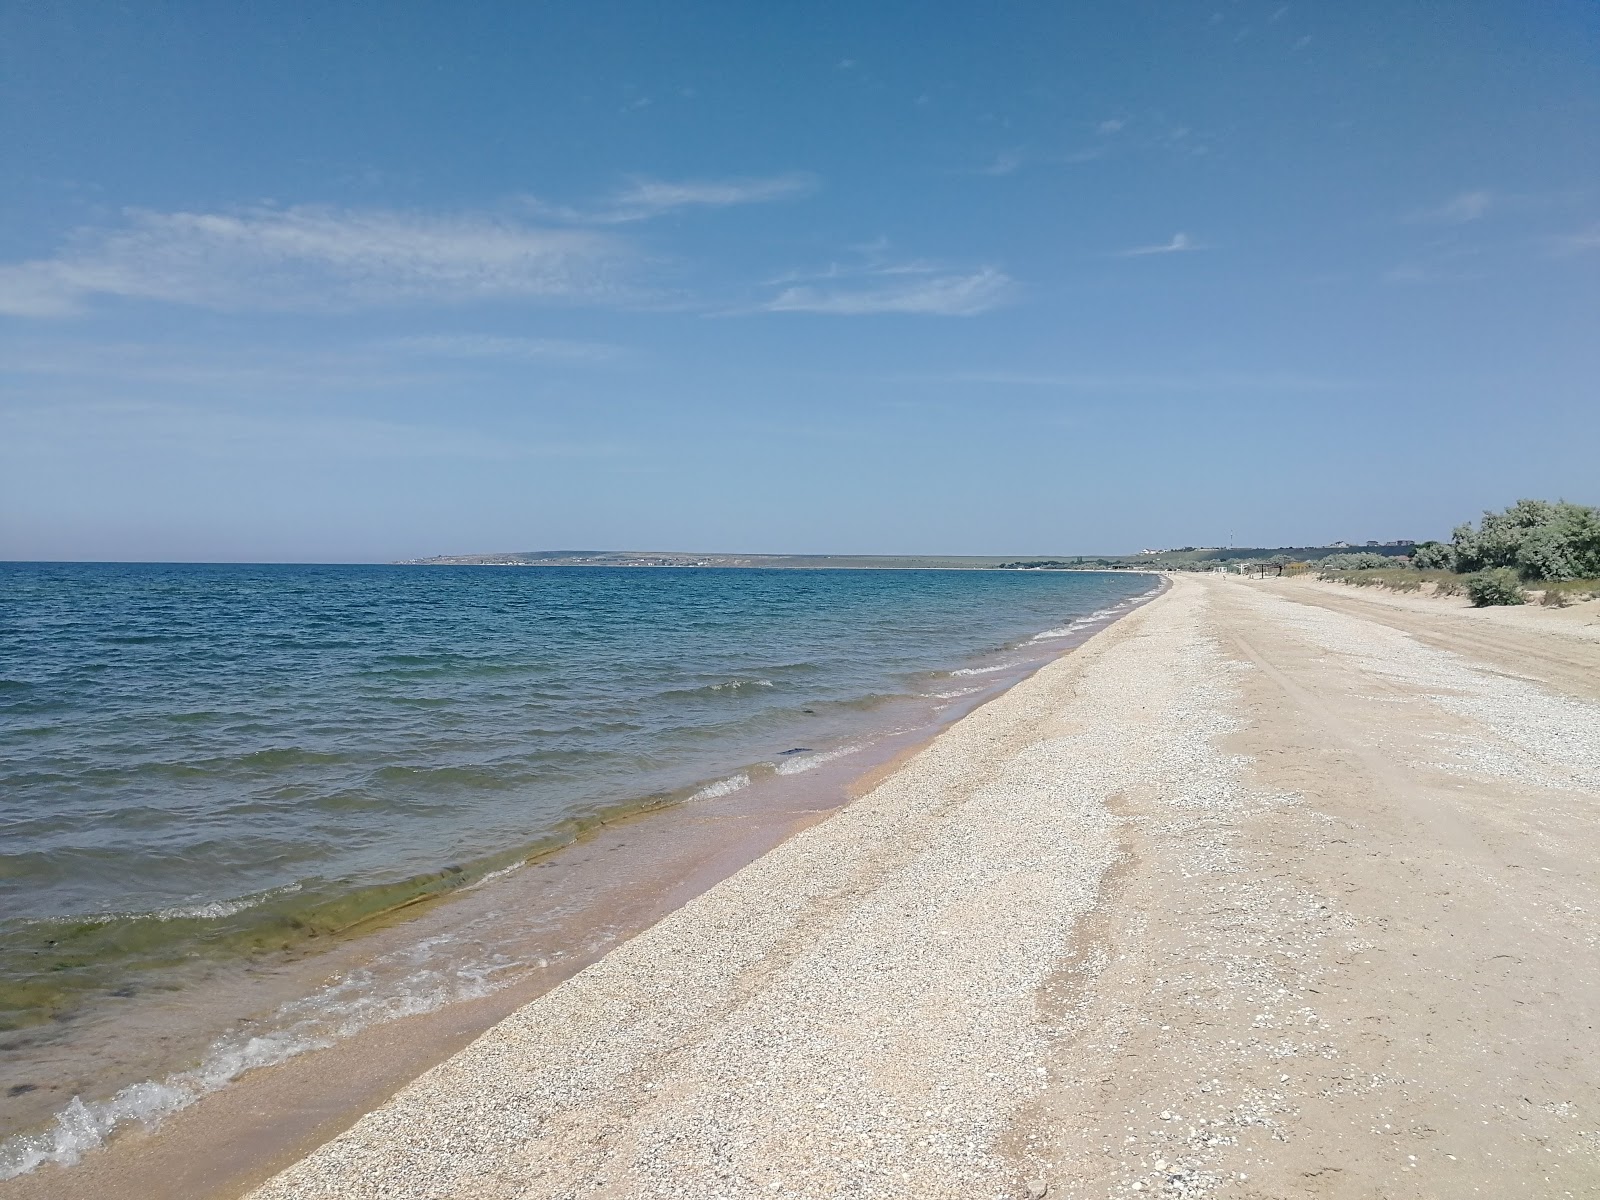 Zdjęcie Plyazh Novootradnoye z powierzchnią jasny piasek